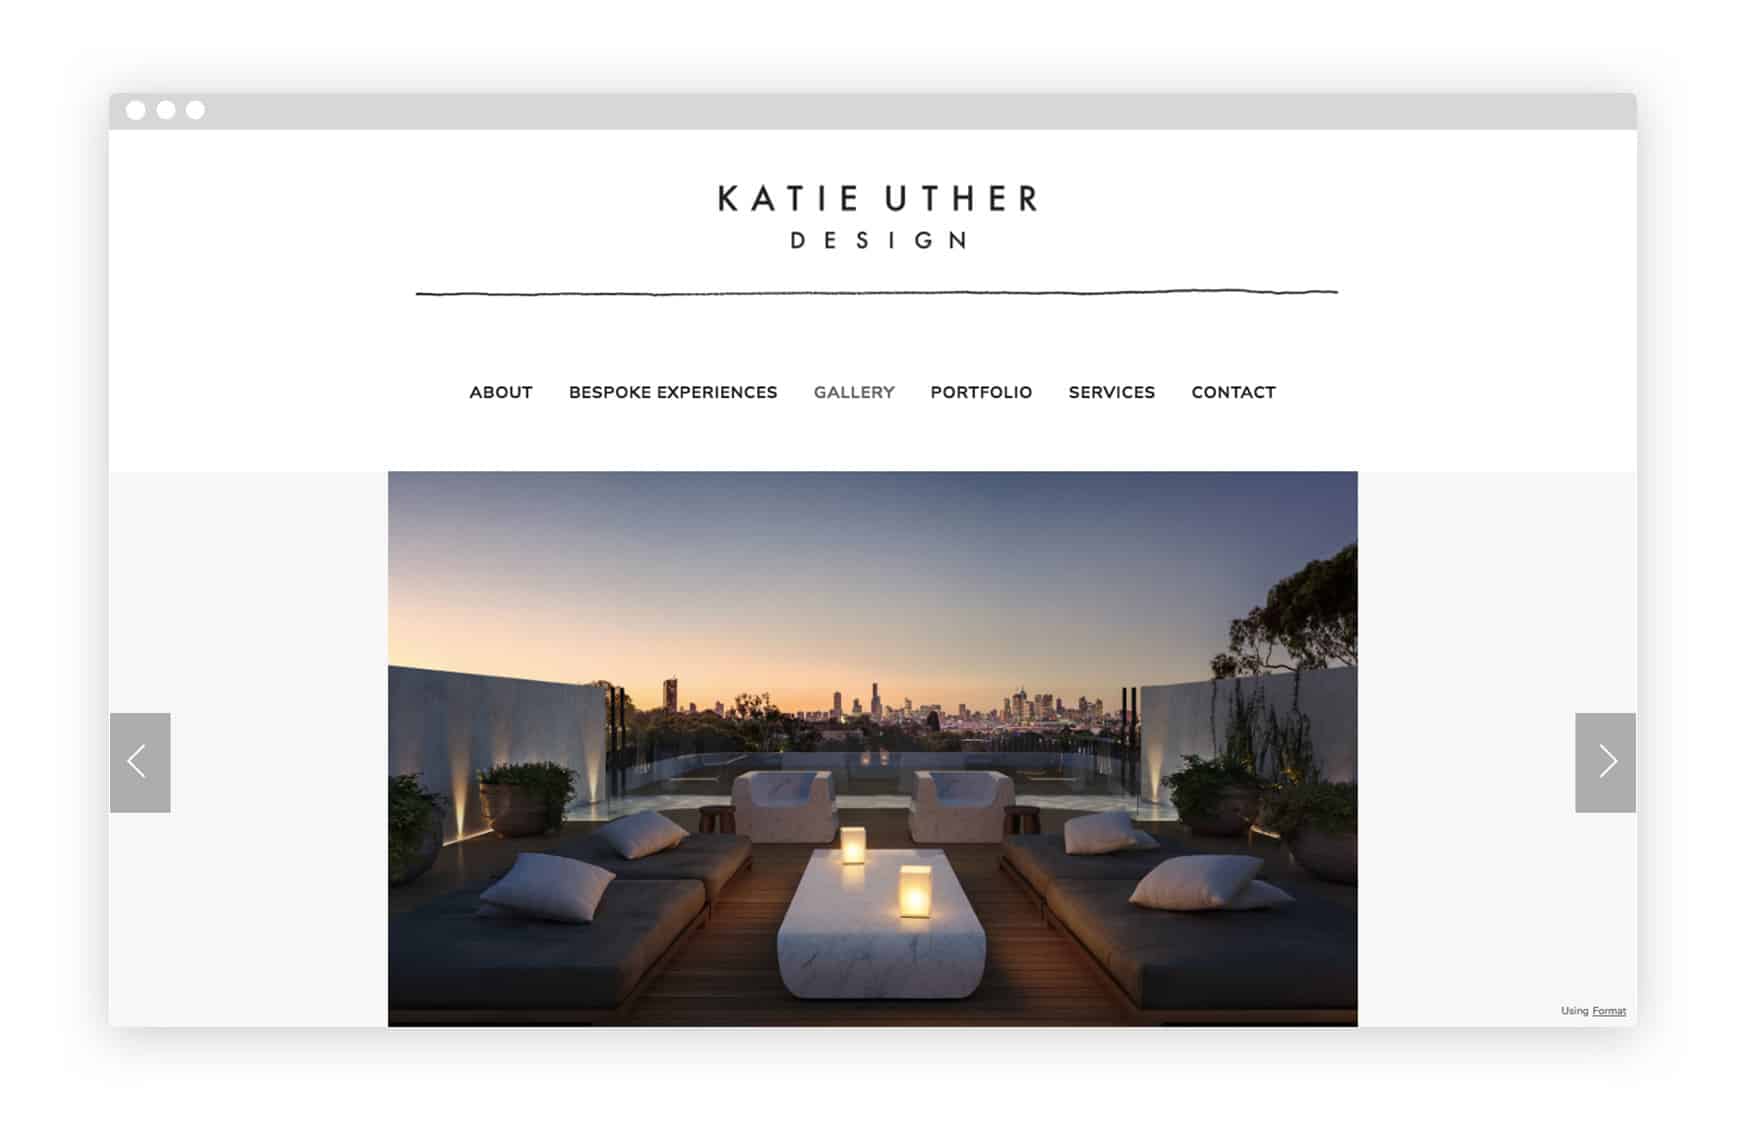 katie_uther_interior_design_portfolio